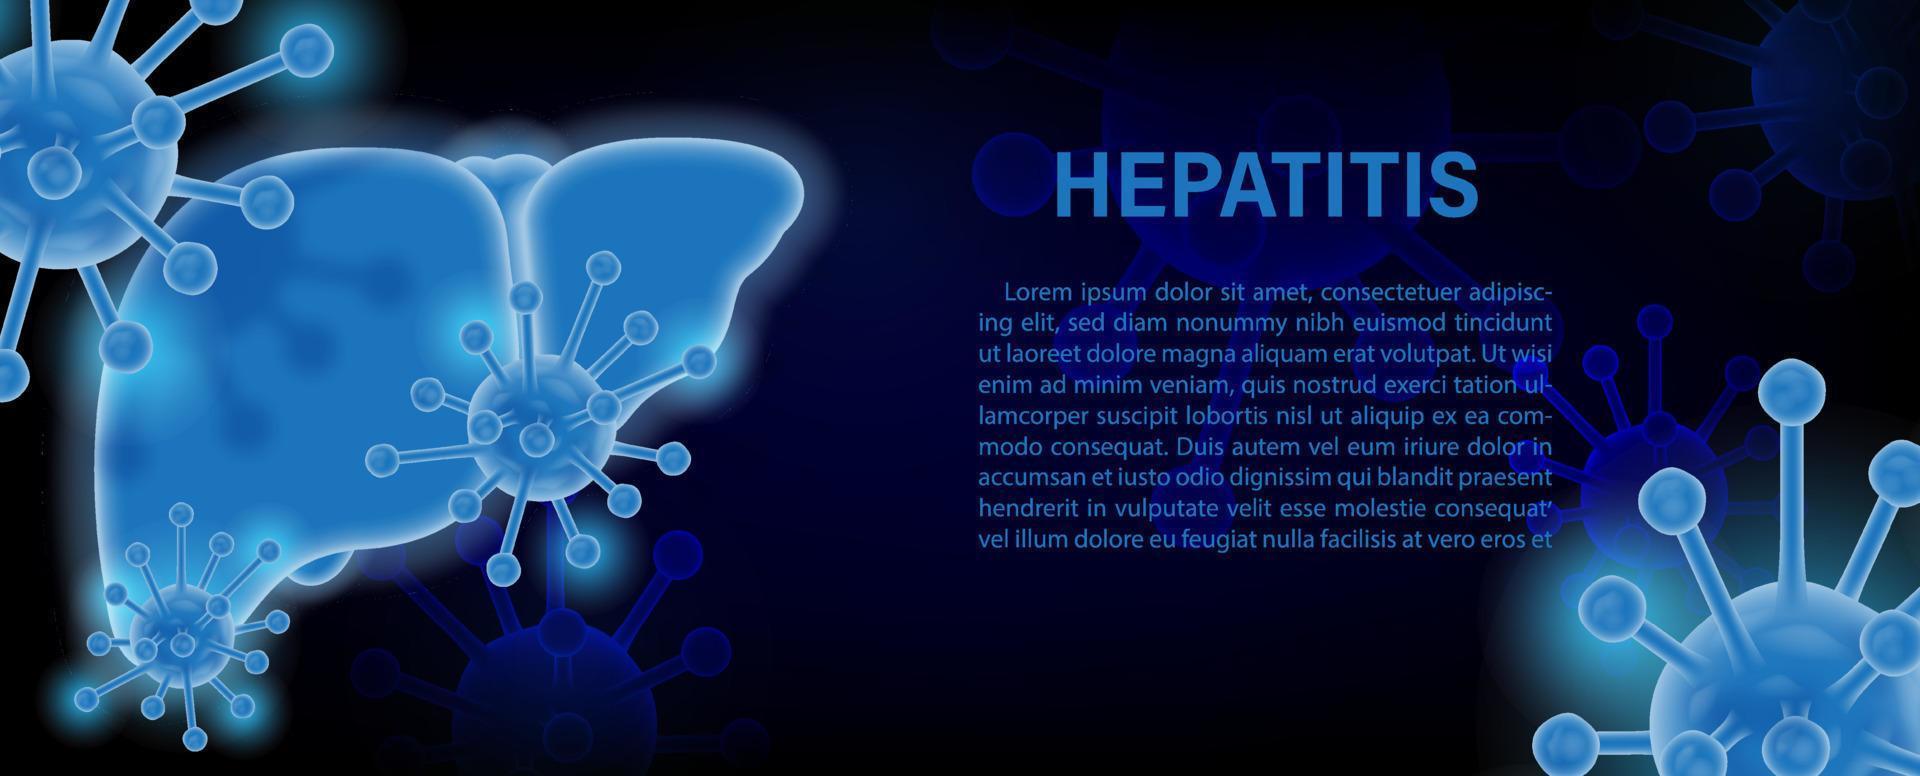 närbild och beskära symboler av virus i neonblått med 3d-stil och formulering av hepatit, exempeltexter på virussymbolsmönster och mörkblå bakgrund. vektor